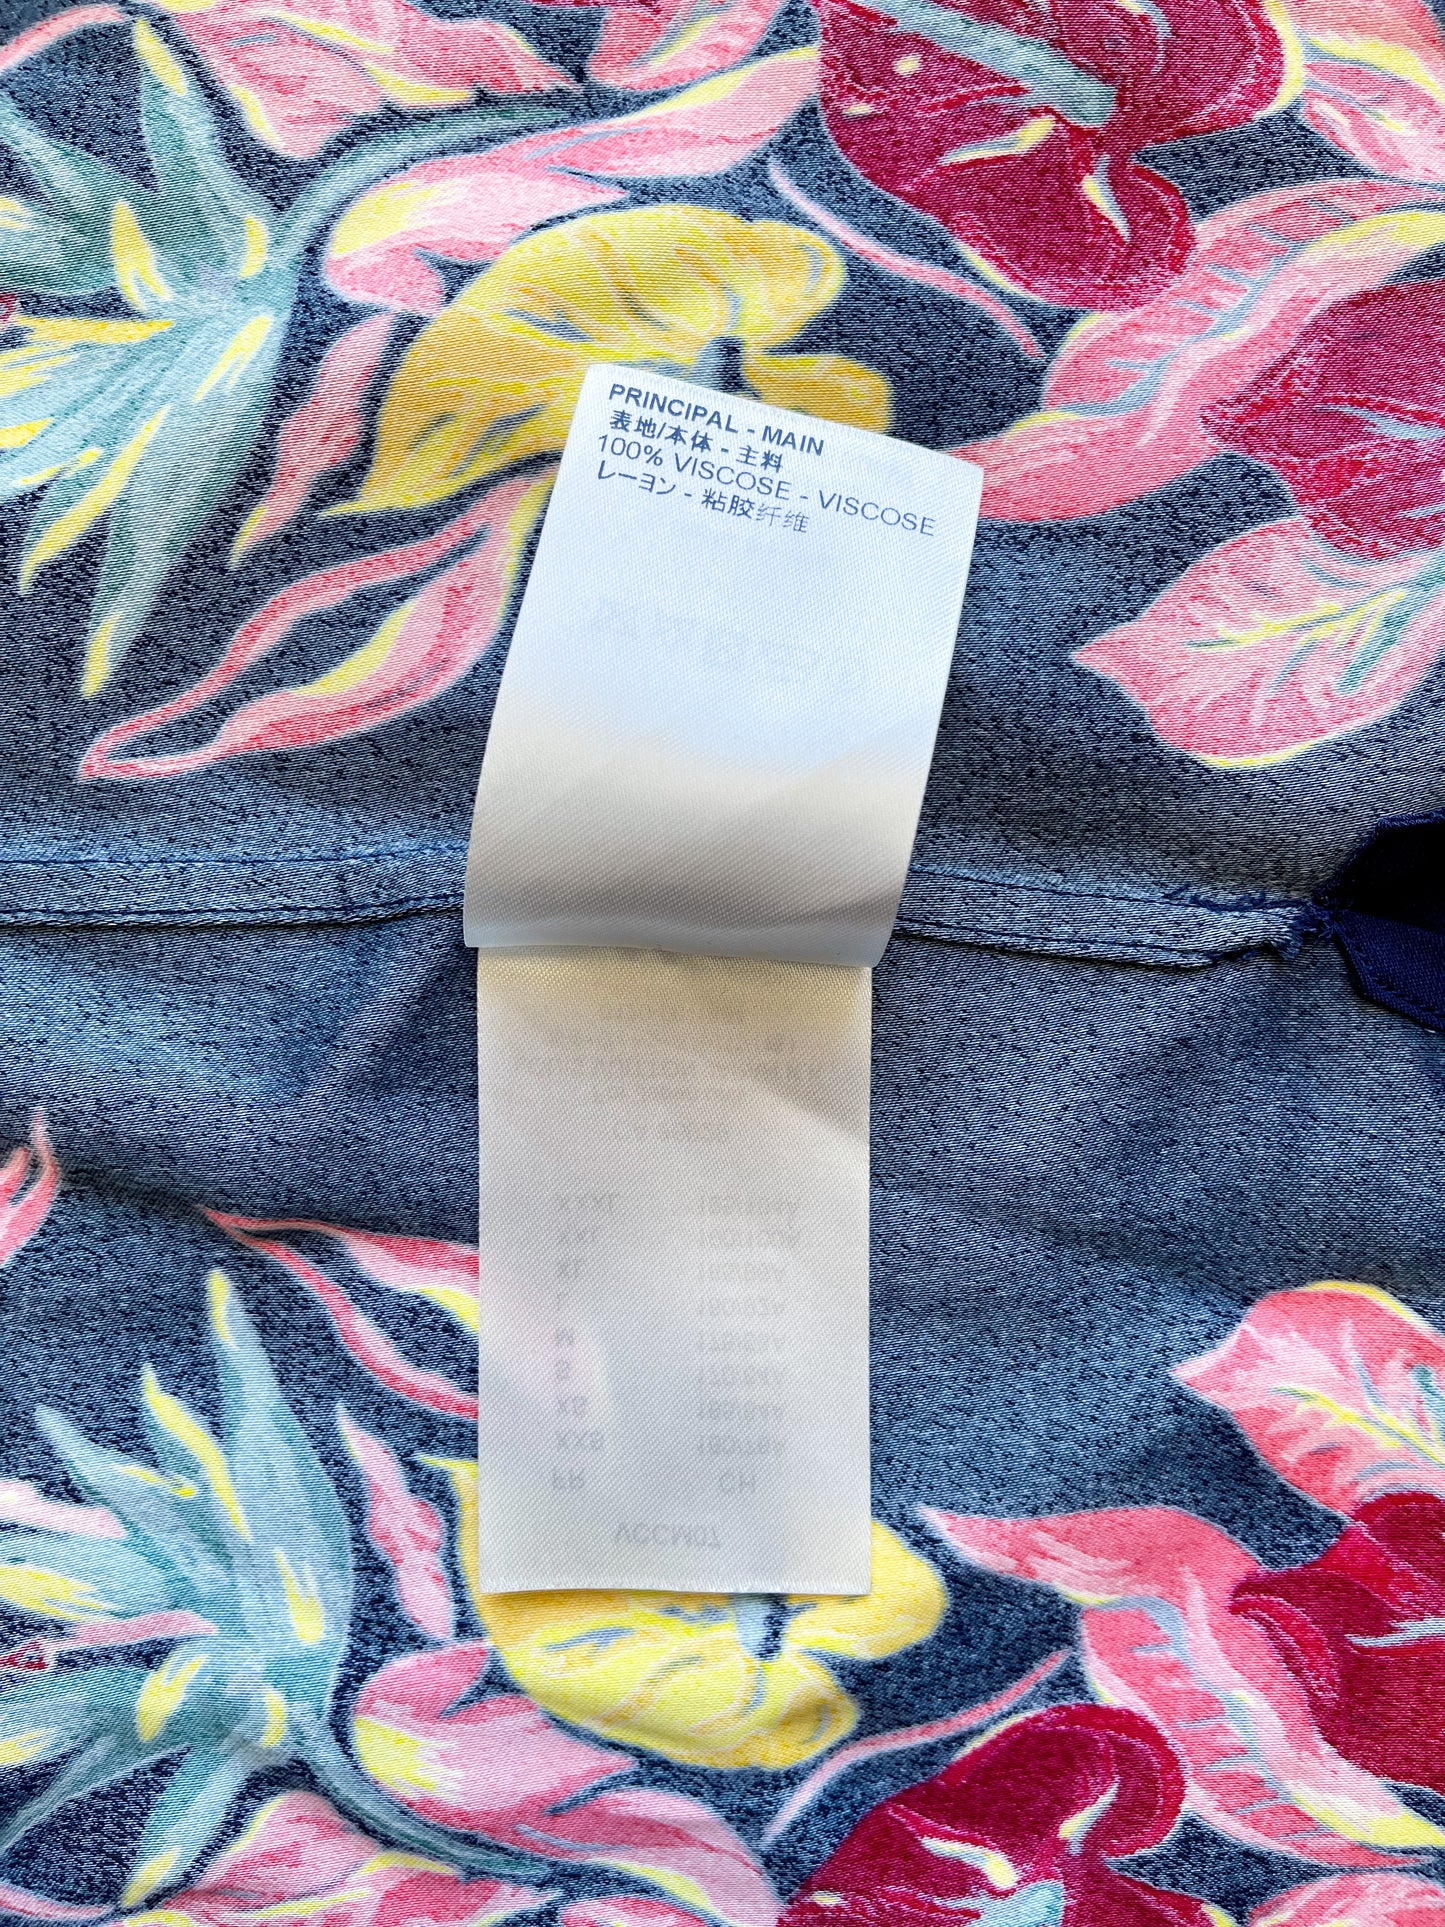 Louis Vuitton Floral Hawaiian Shirt – Savonches